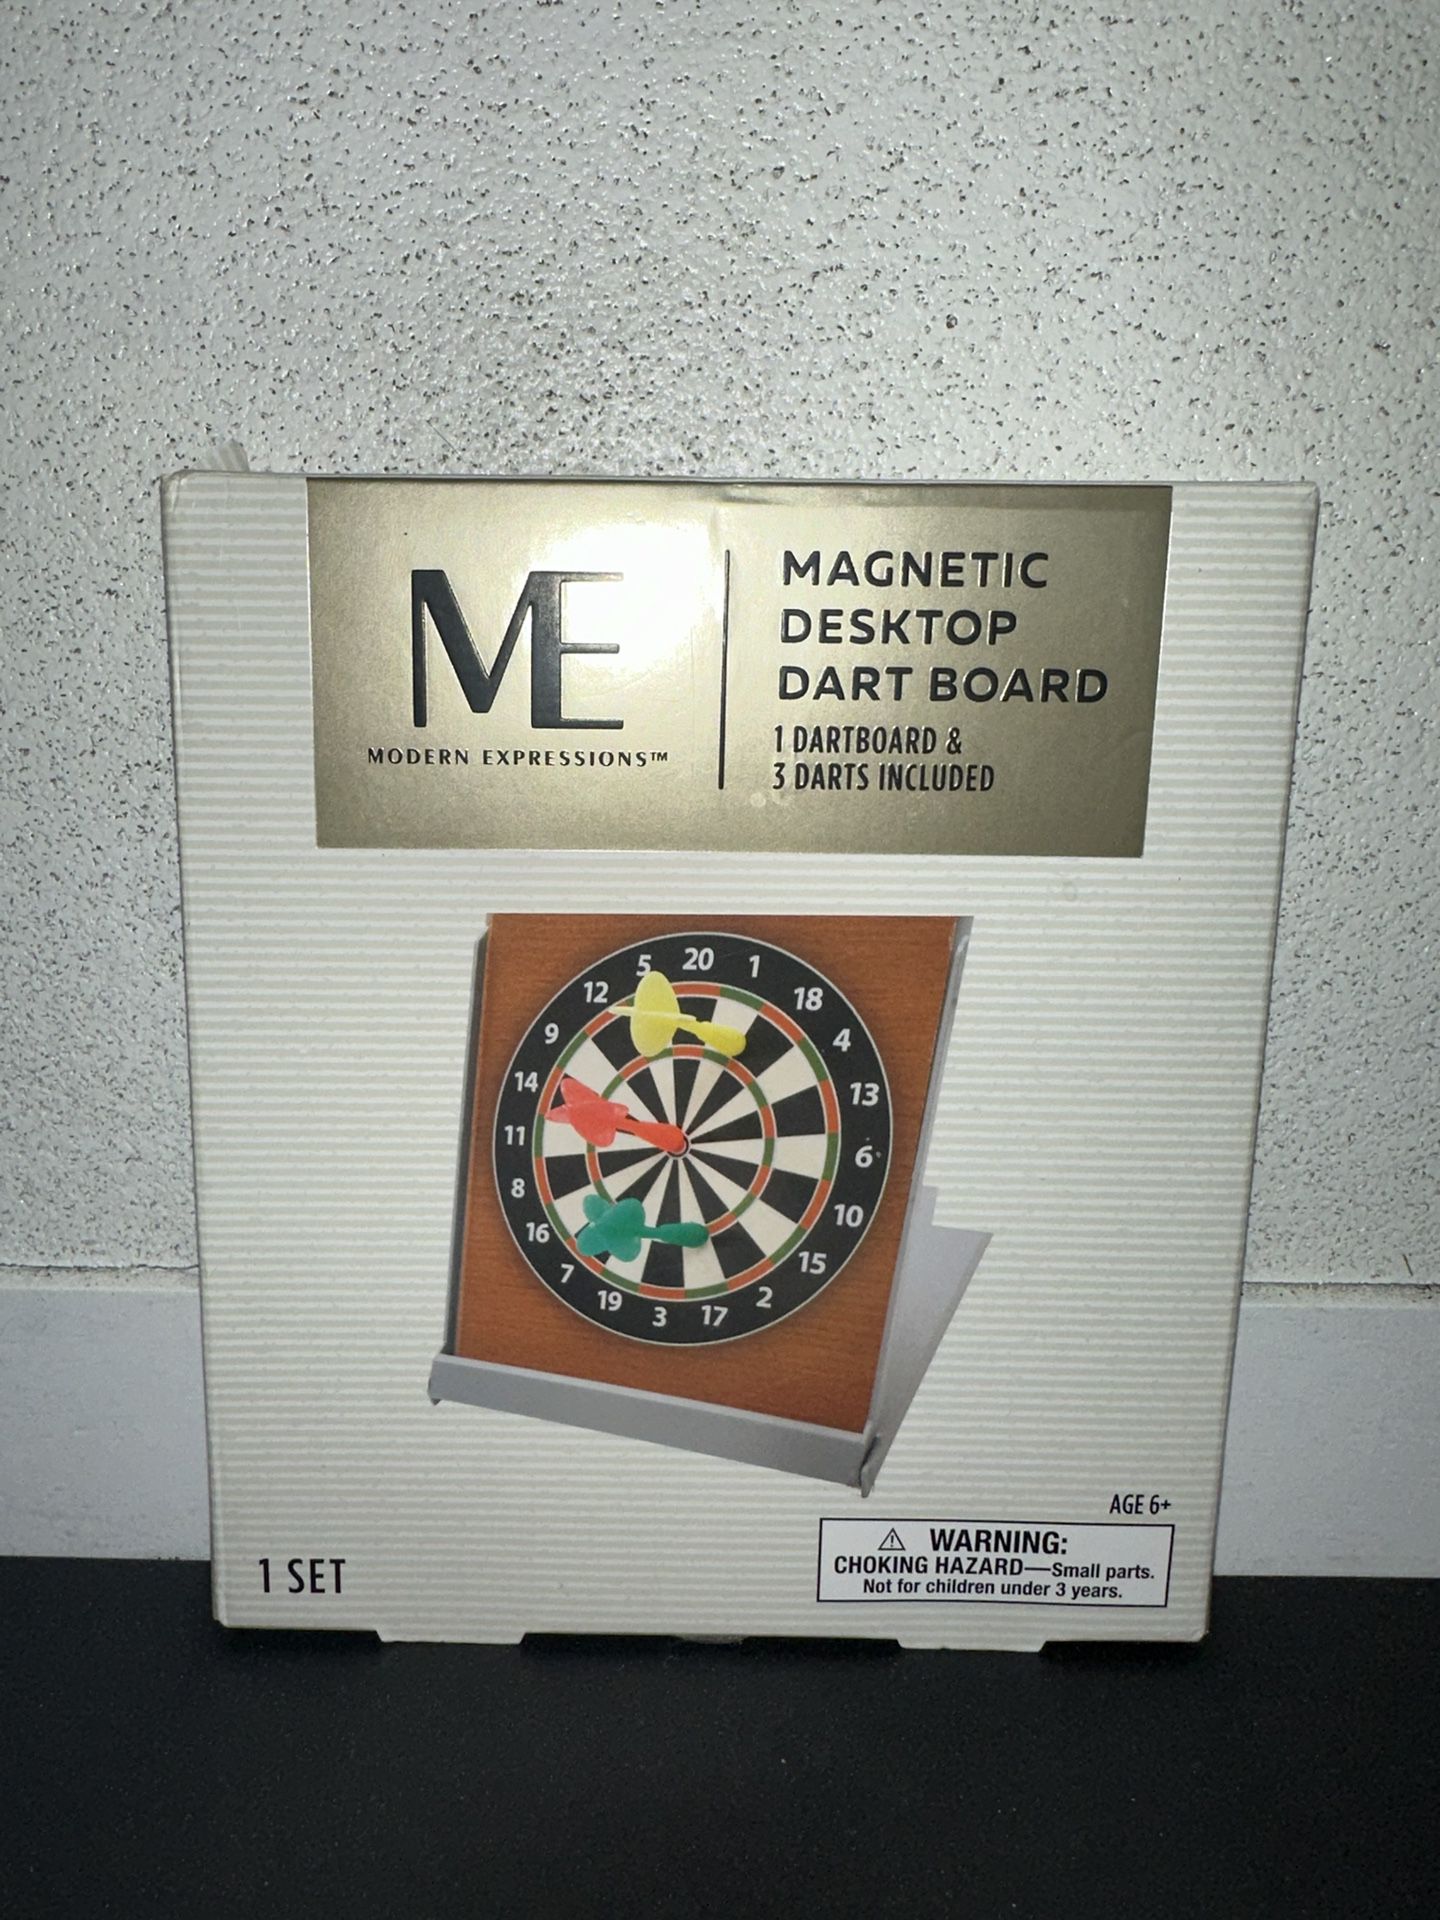 Modern ExpressionsMagnetic Desktop Dart Board